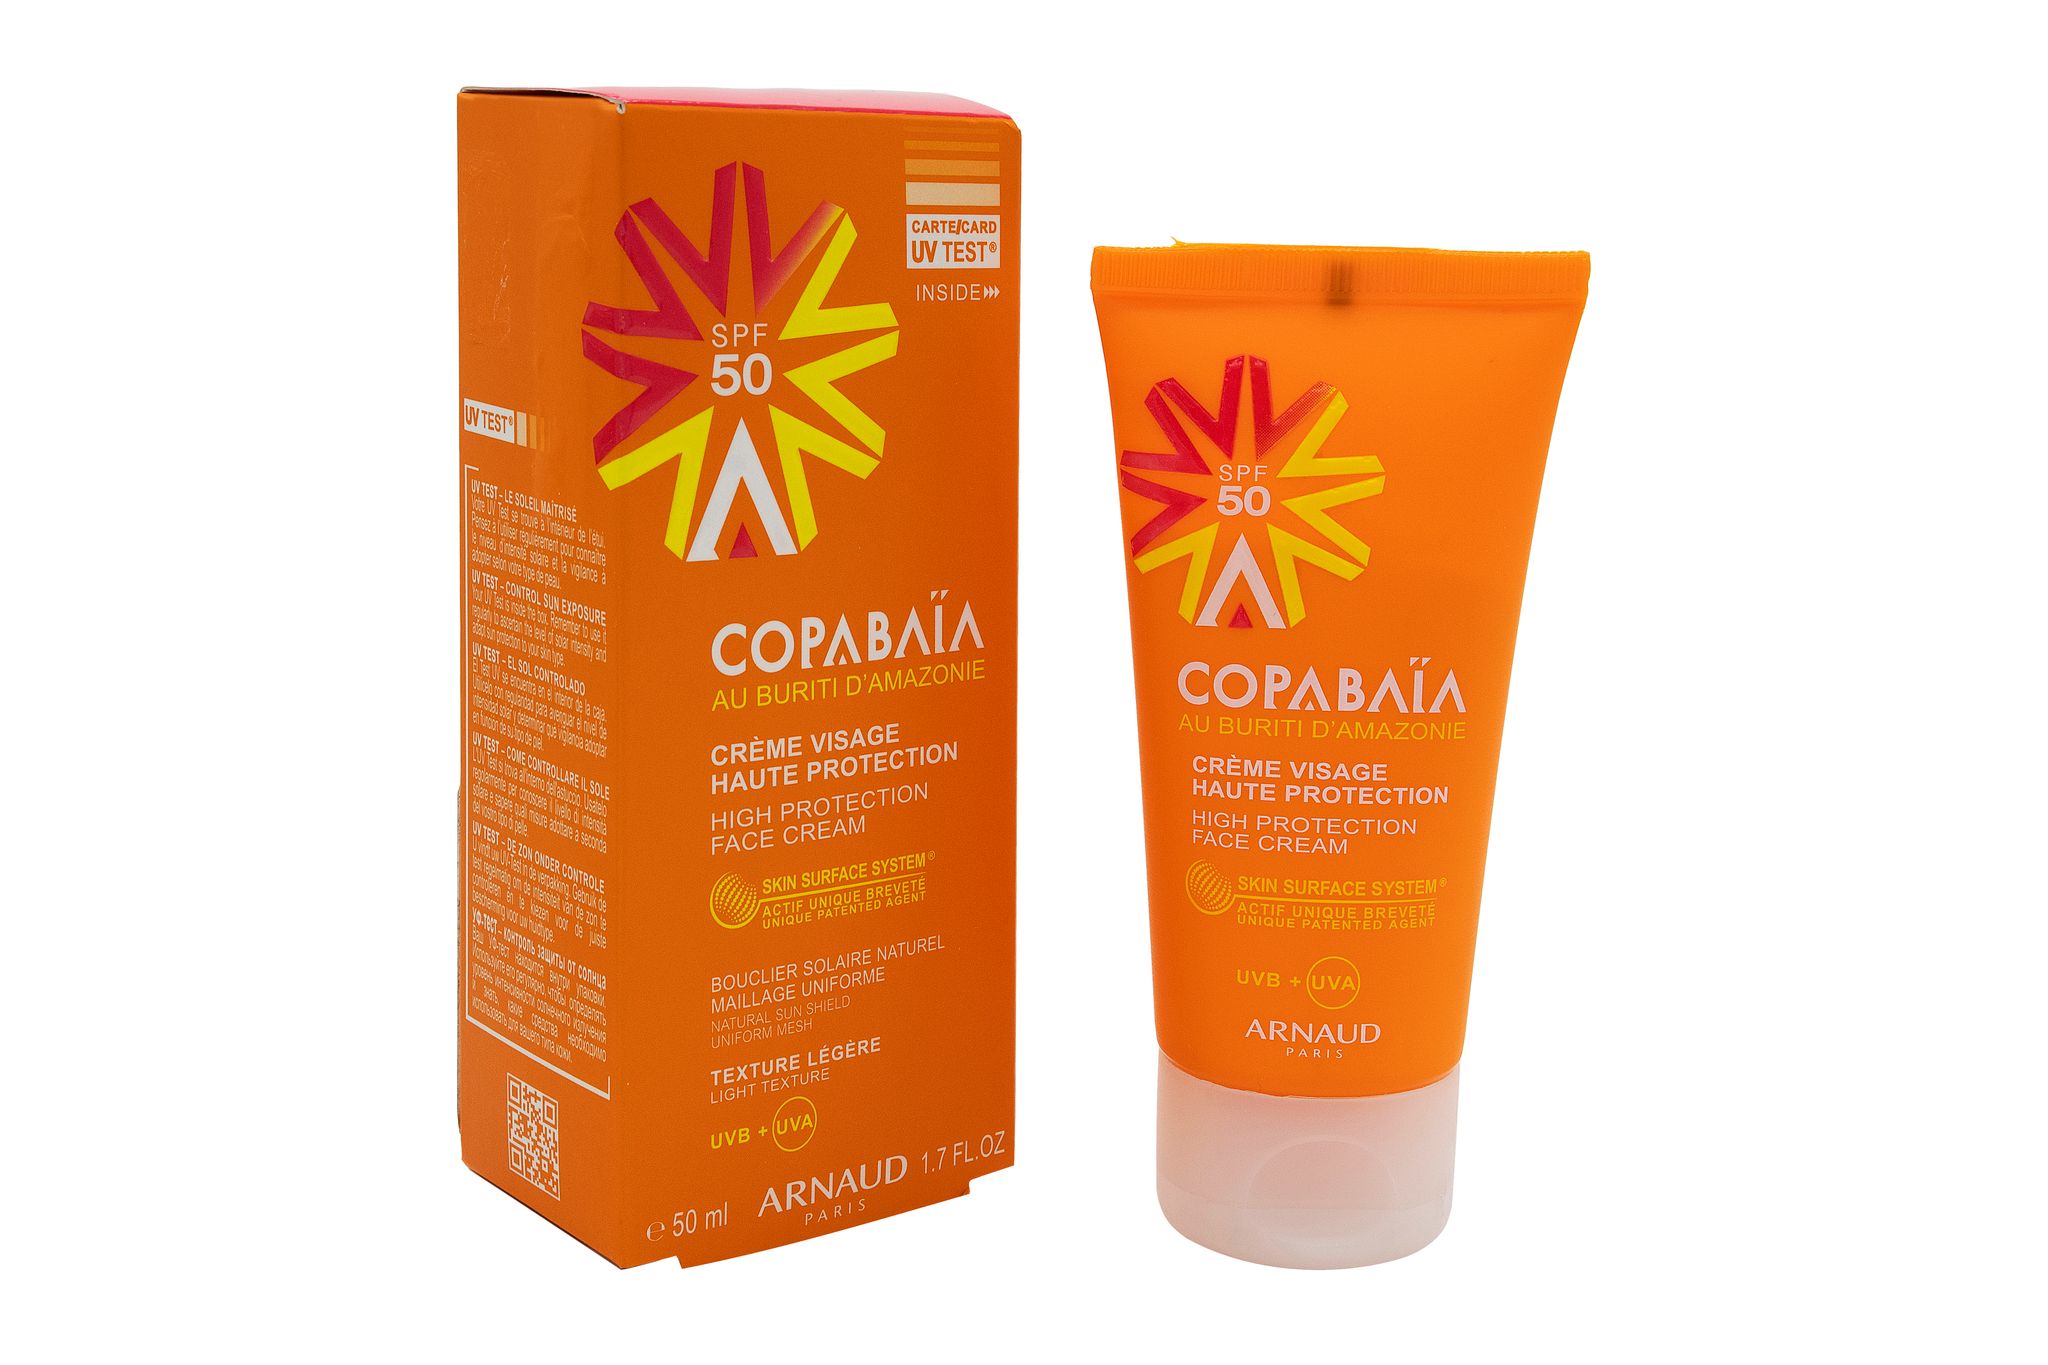 Copabaia High Protection SPF50 Face Cream -50ml